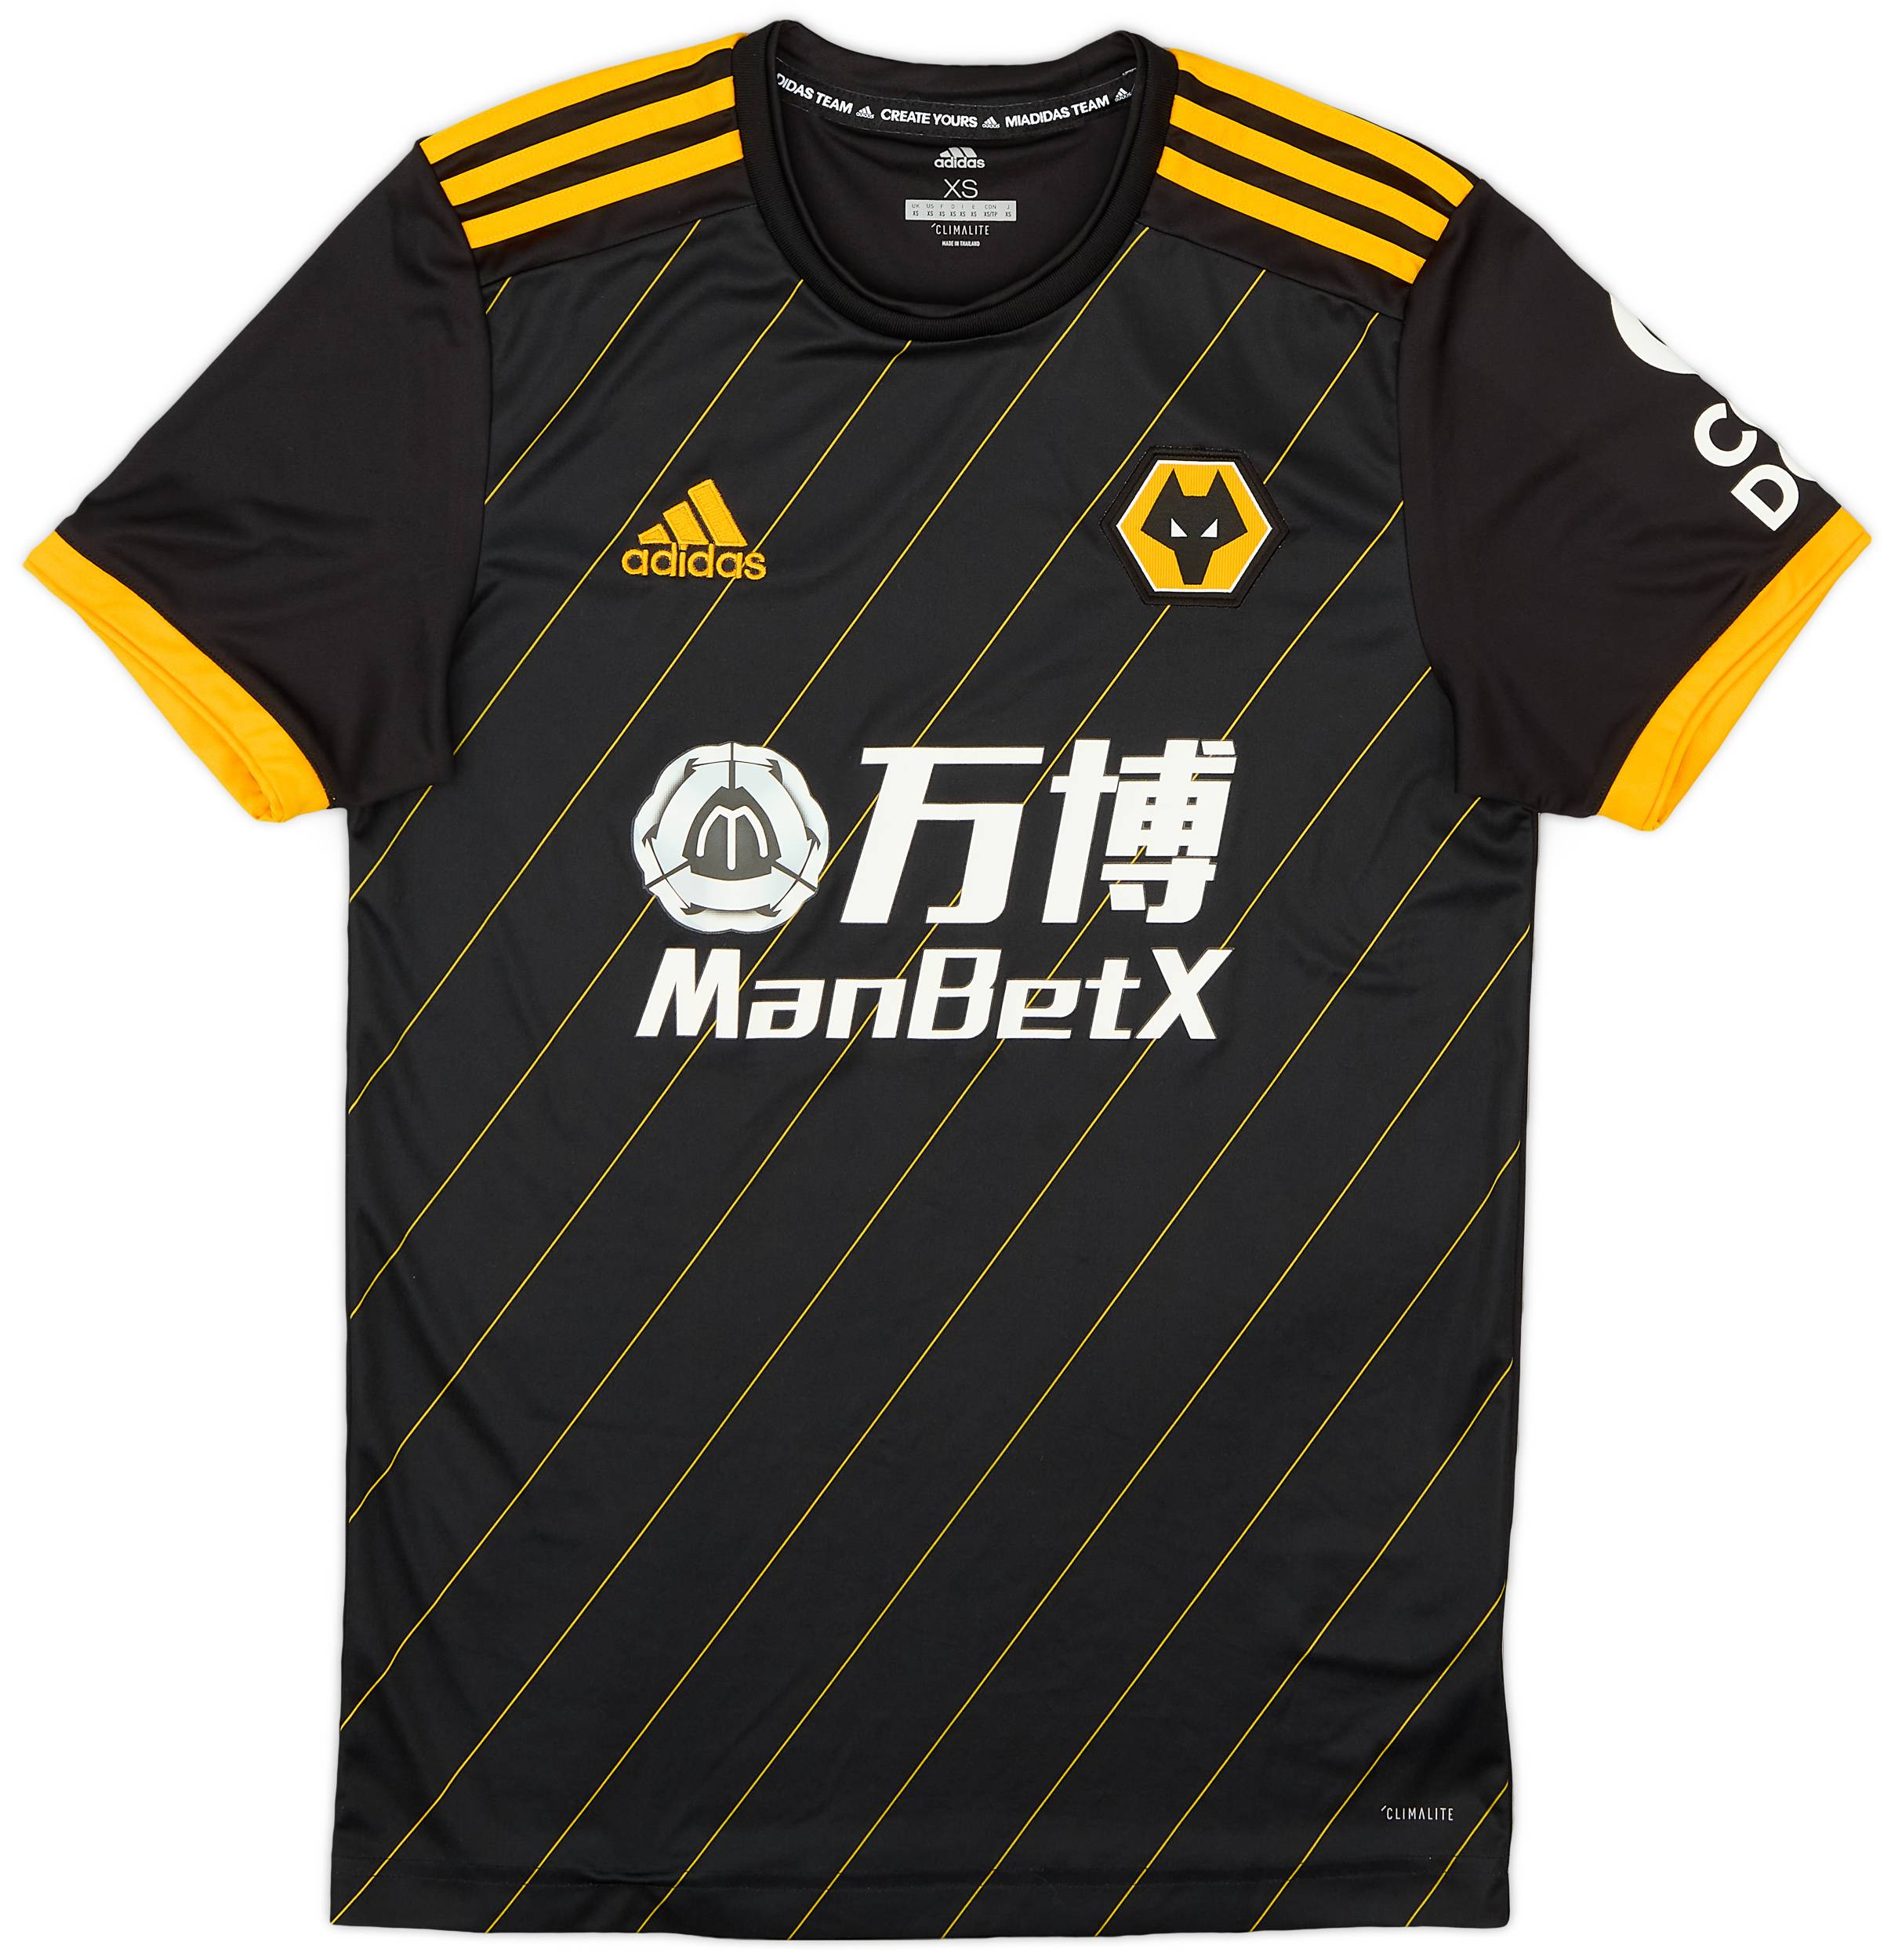 2019-20 Wolves Away Shirt - 9/10 - (XS)